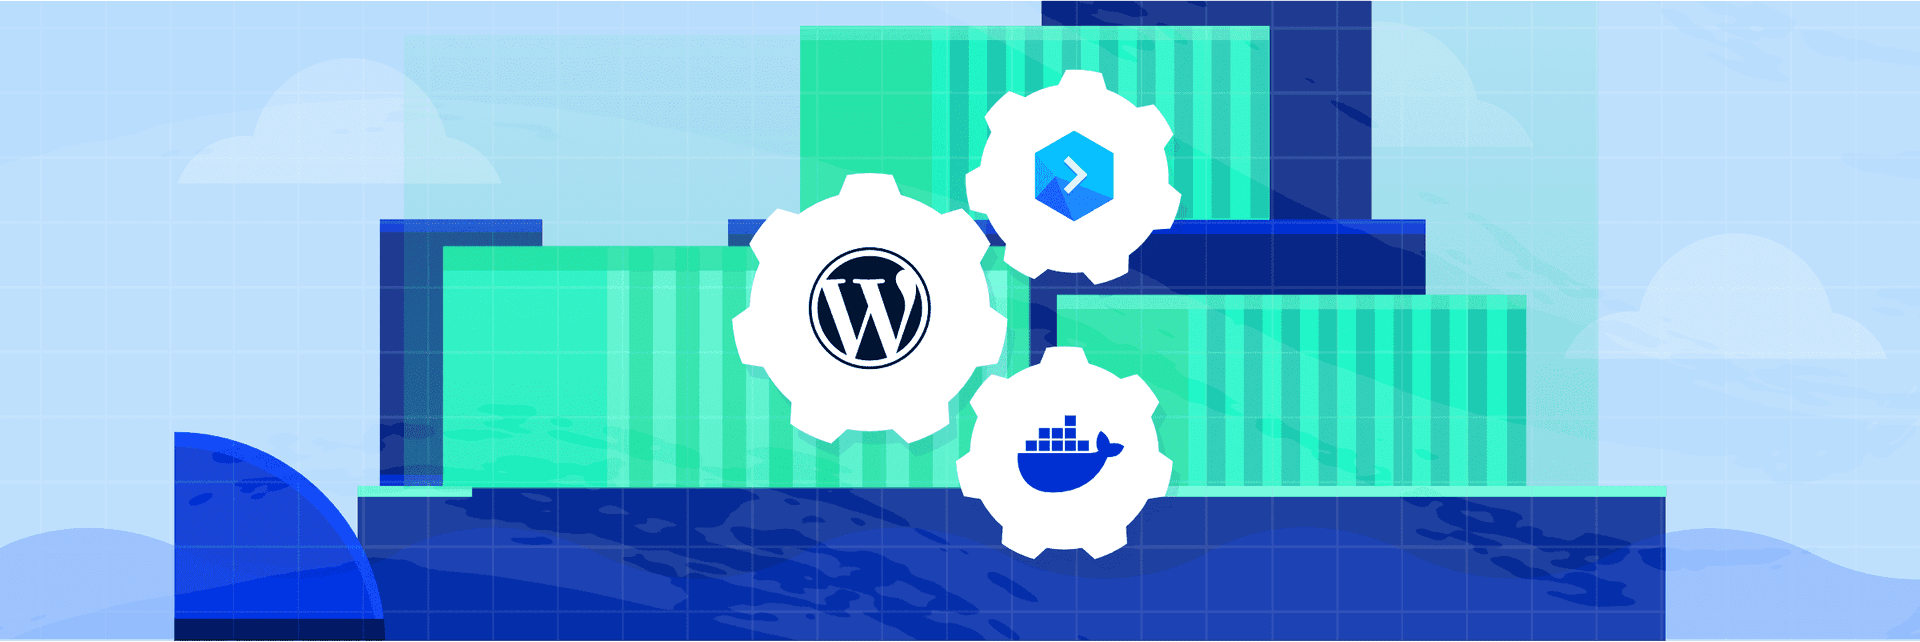 WordPress in Docker: Dockerization, automation, and Kubernetes.